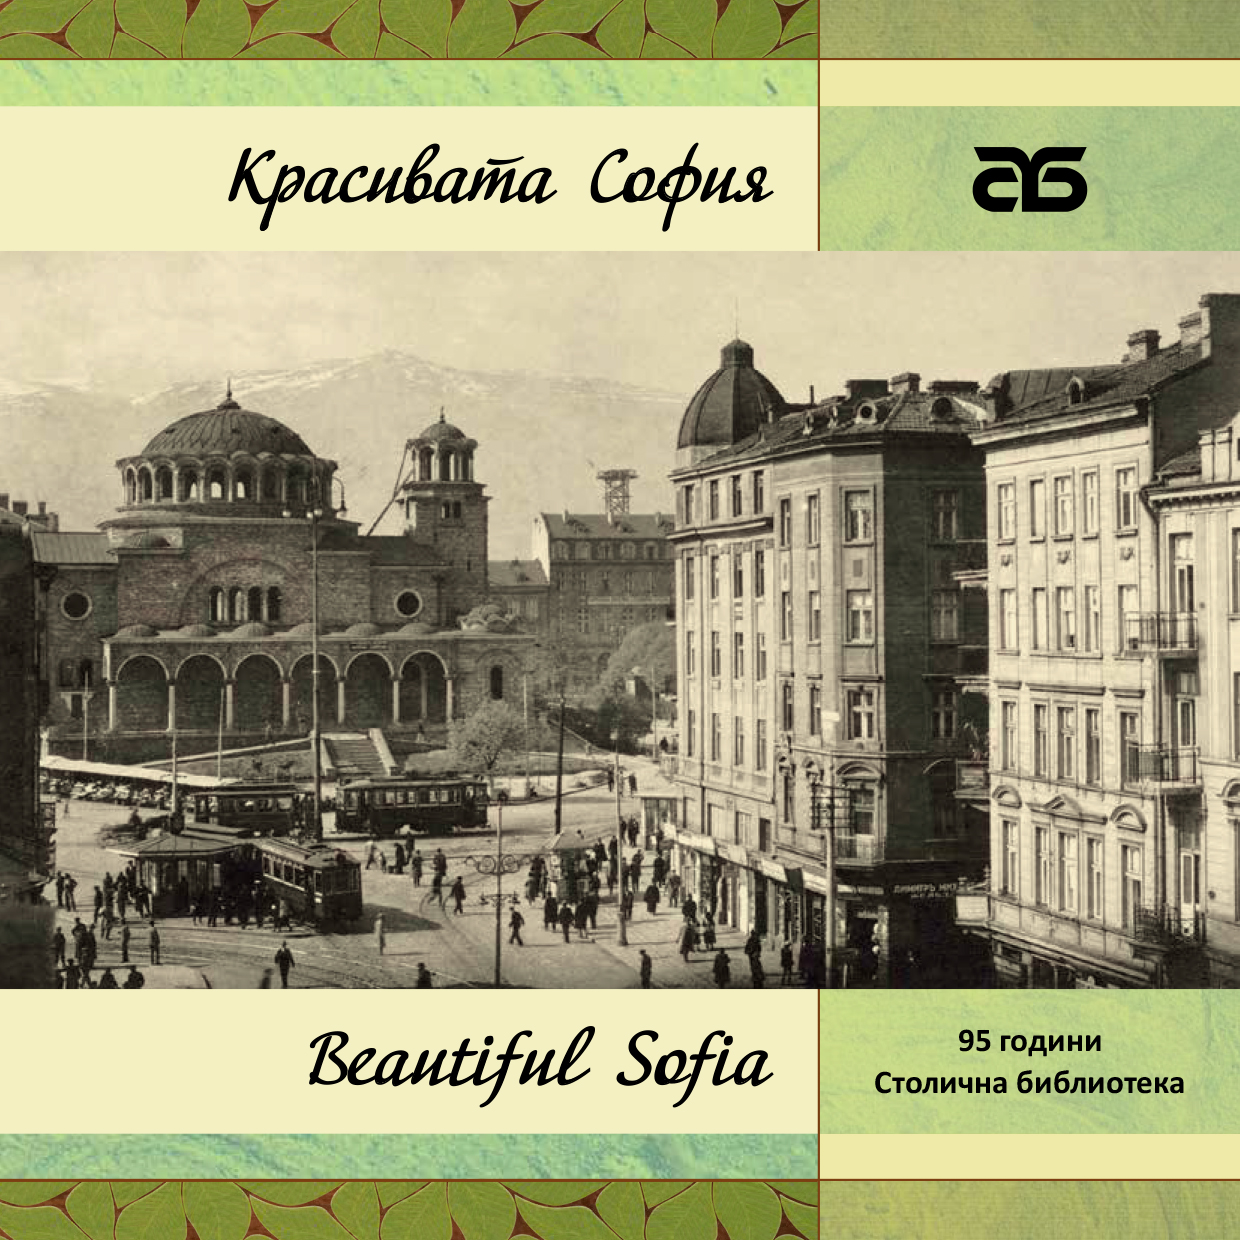 Новото издание „Красивата София“ от тематичната поредица на Столична библиотека за историята на столицата